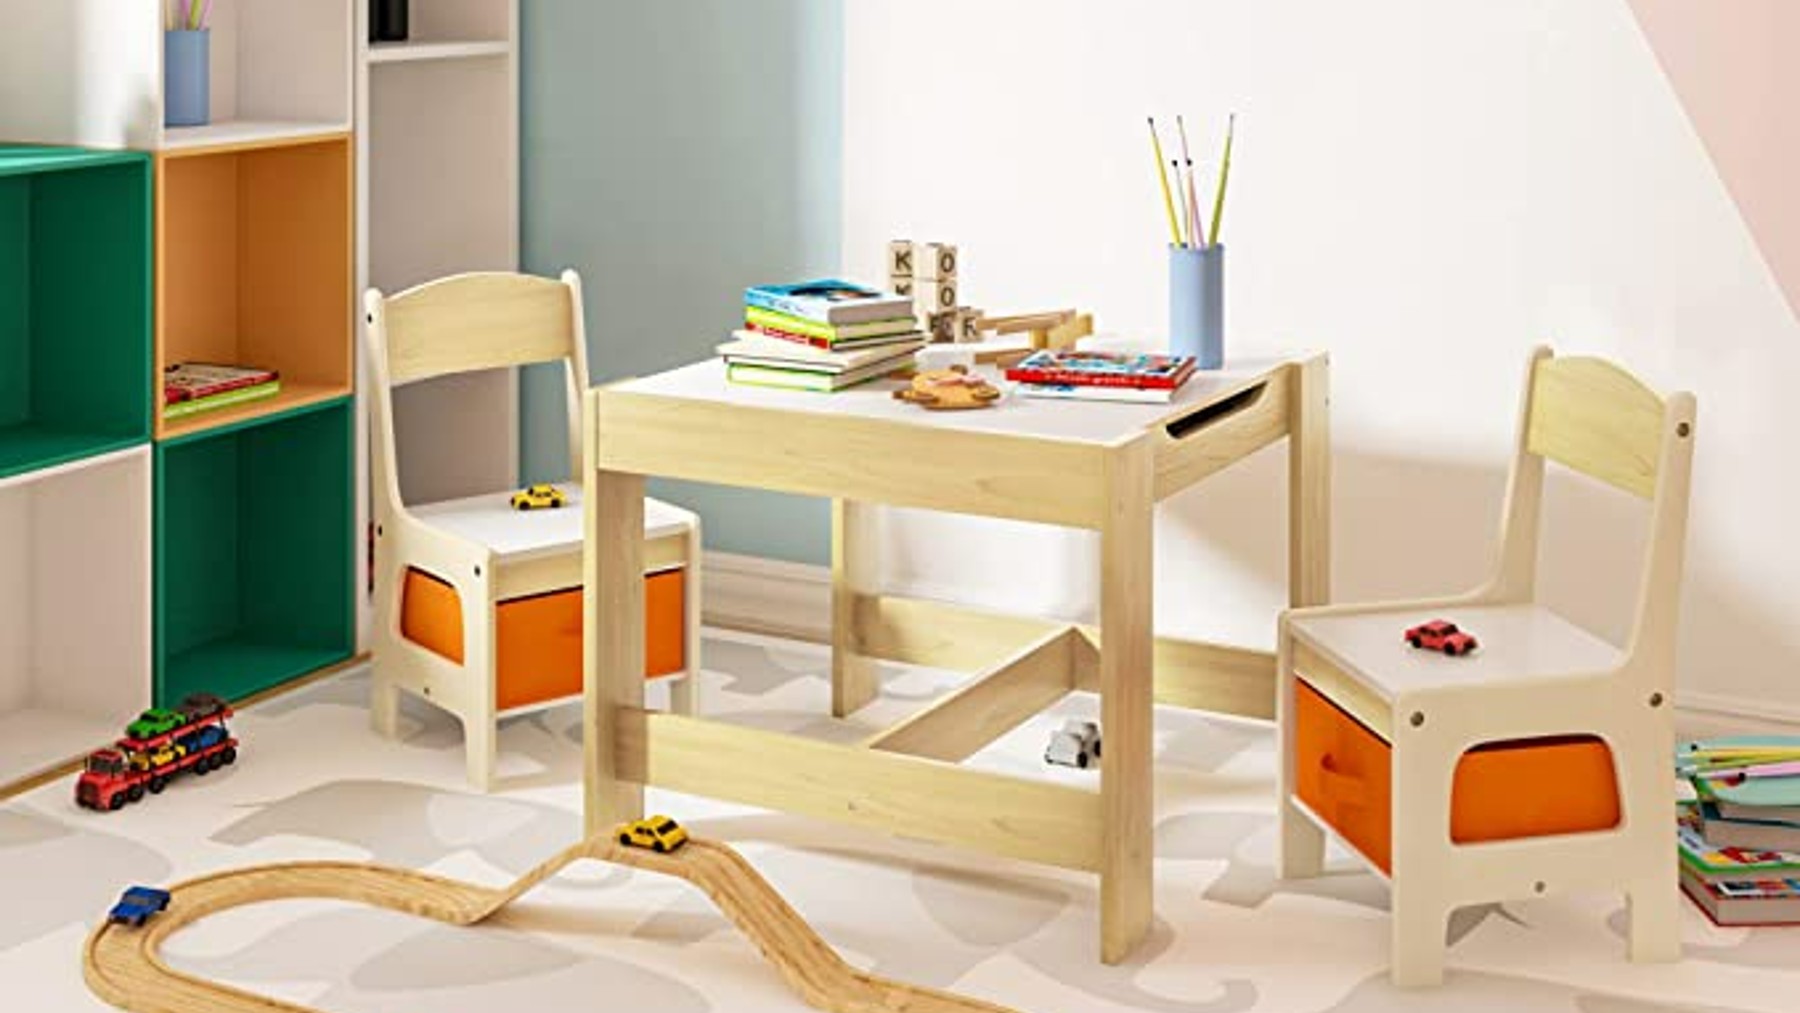 Qué tienen de especial las mesas infantiles? - Blog Deskidea